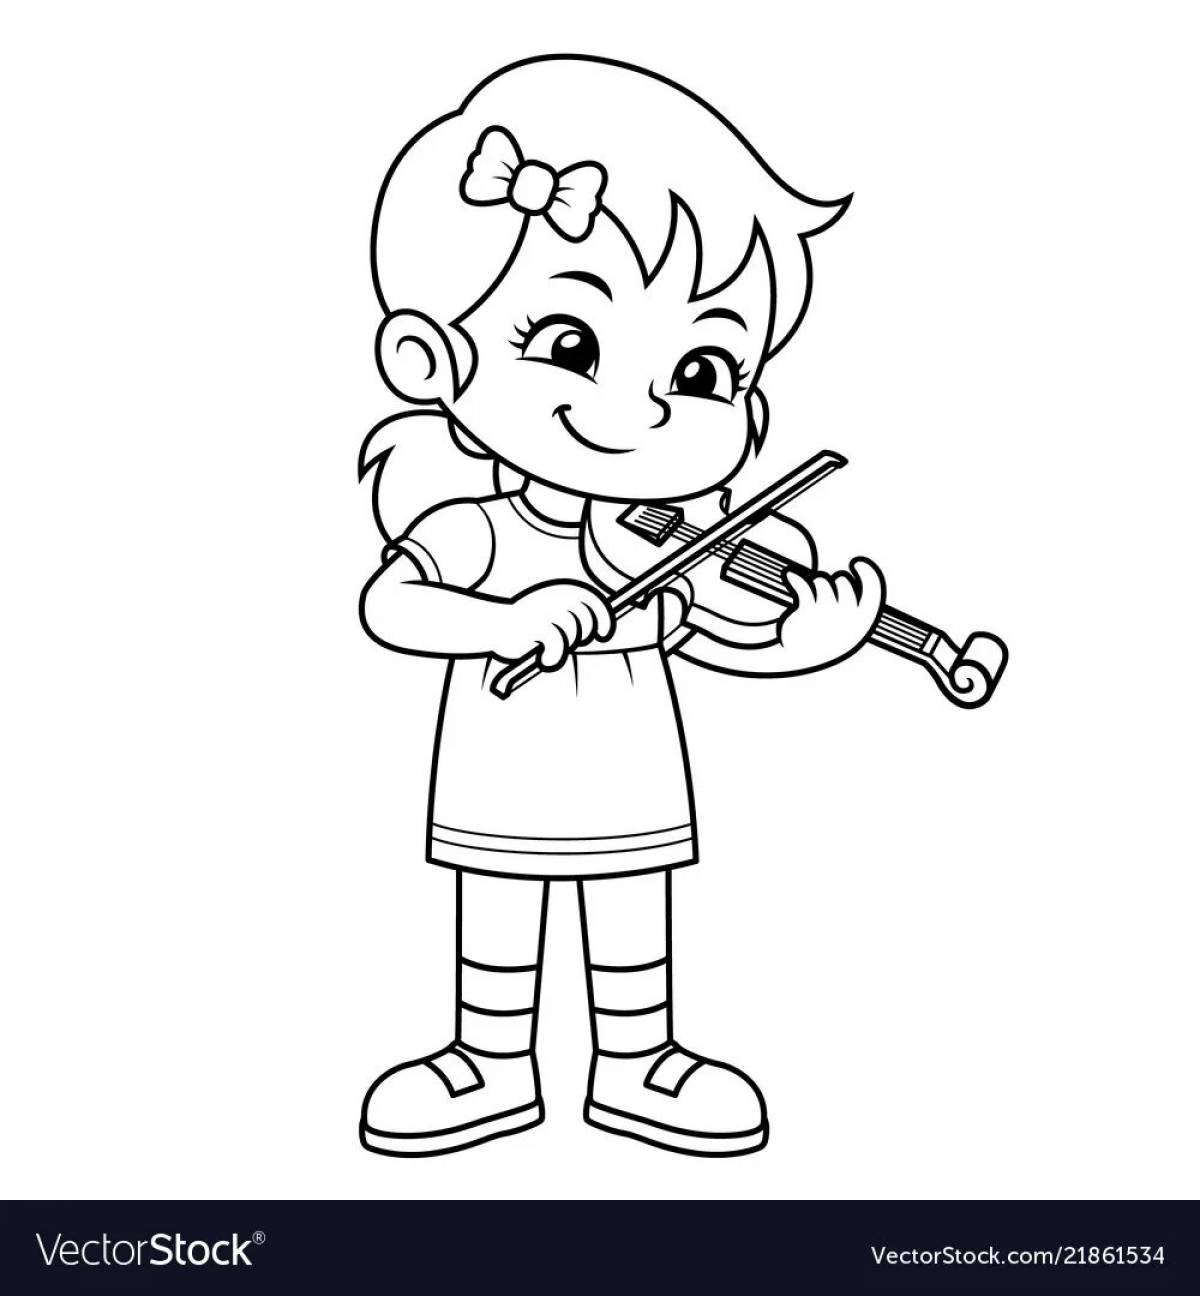 Violin boy #13